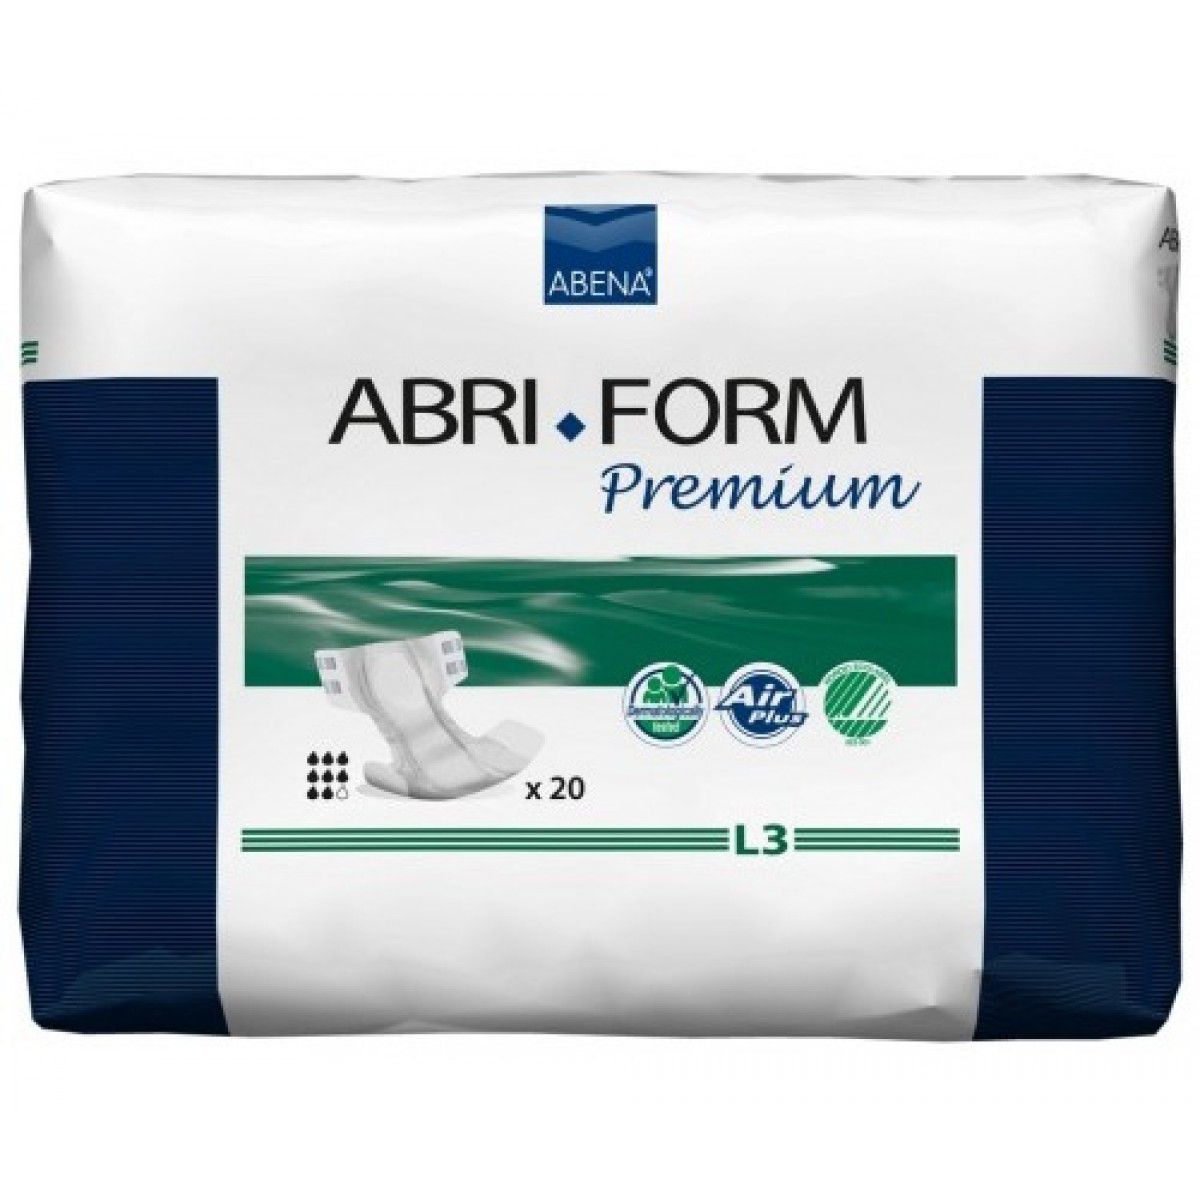 Подгузник для взрослых (ночные) Premium Abri-Form L3